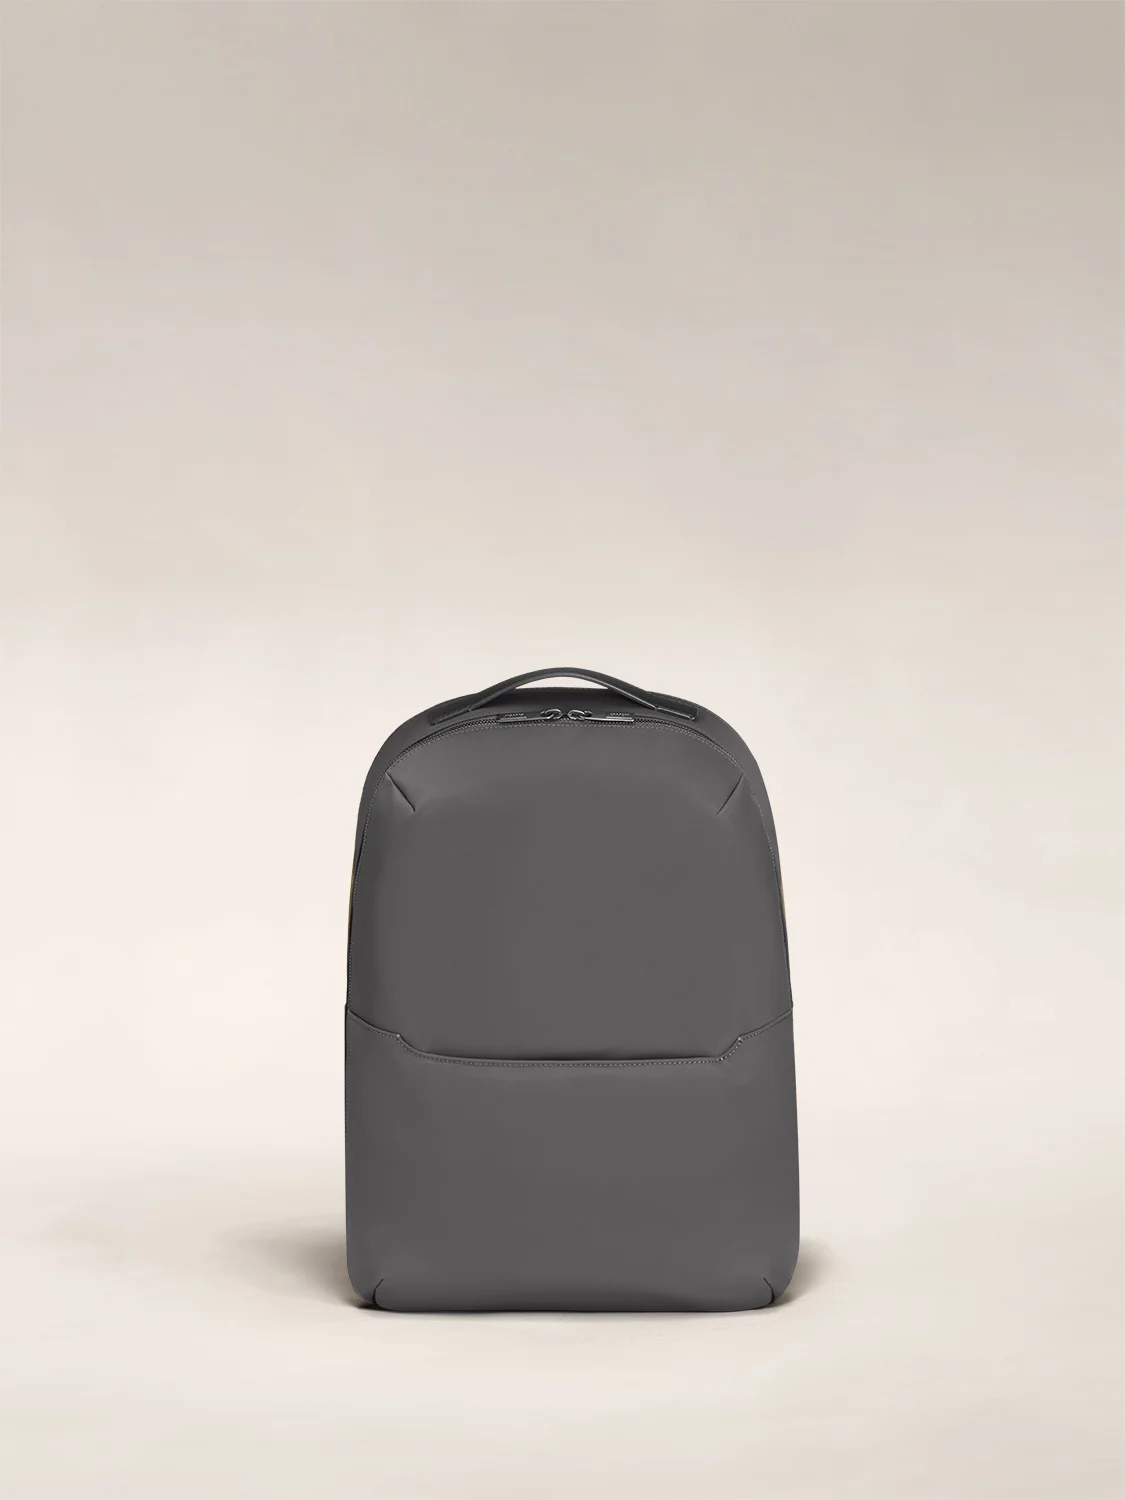 The Zip Backpack in Asphalt nylon